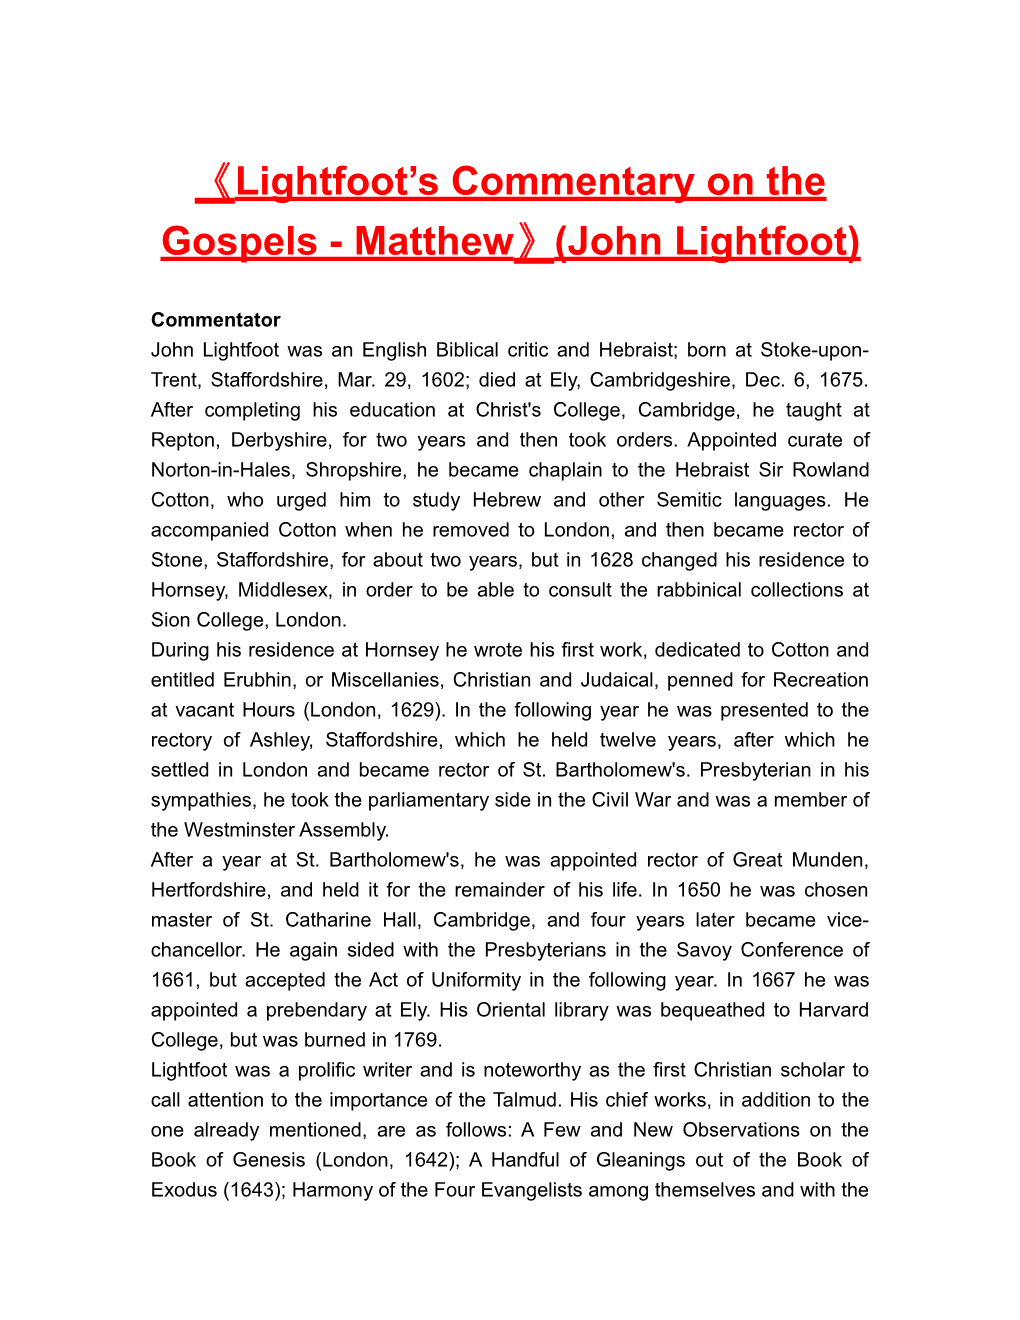 Lightfoot S Commentary on the Gospels - Matthew (John Lightfoot)